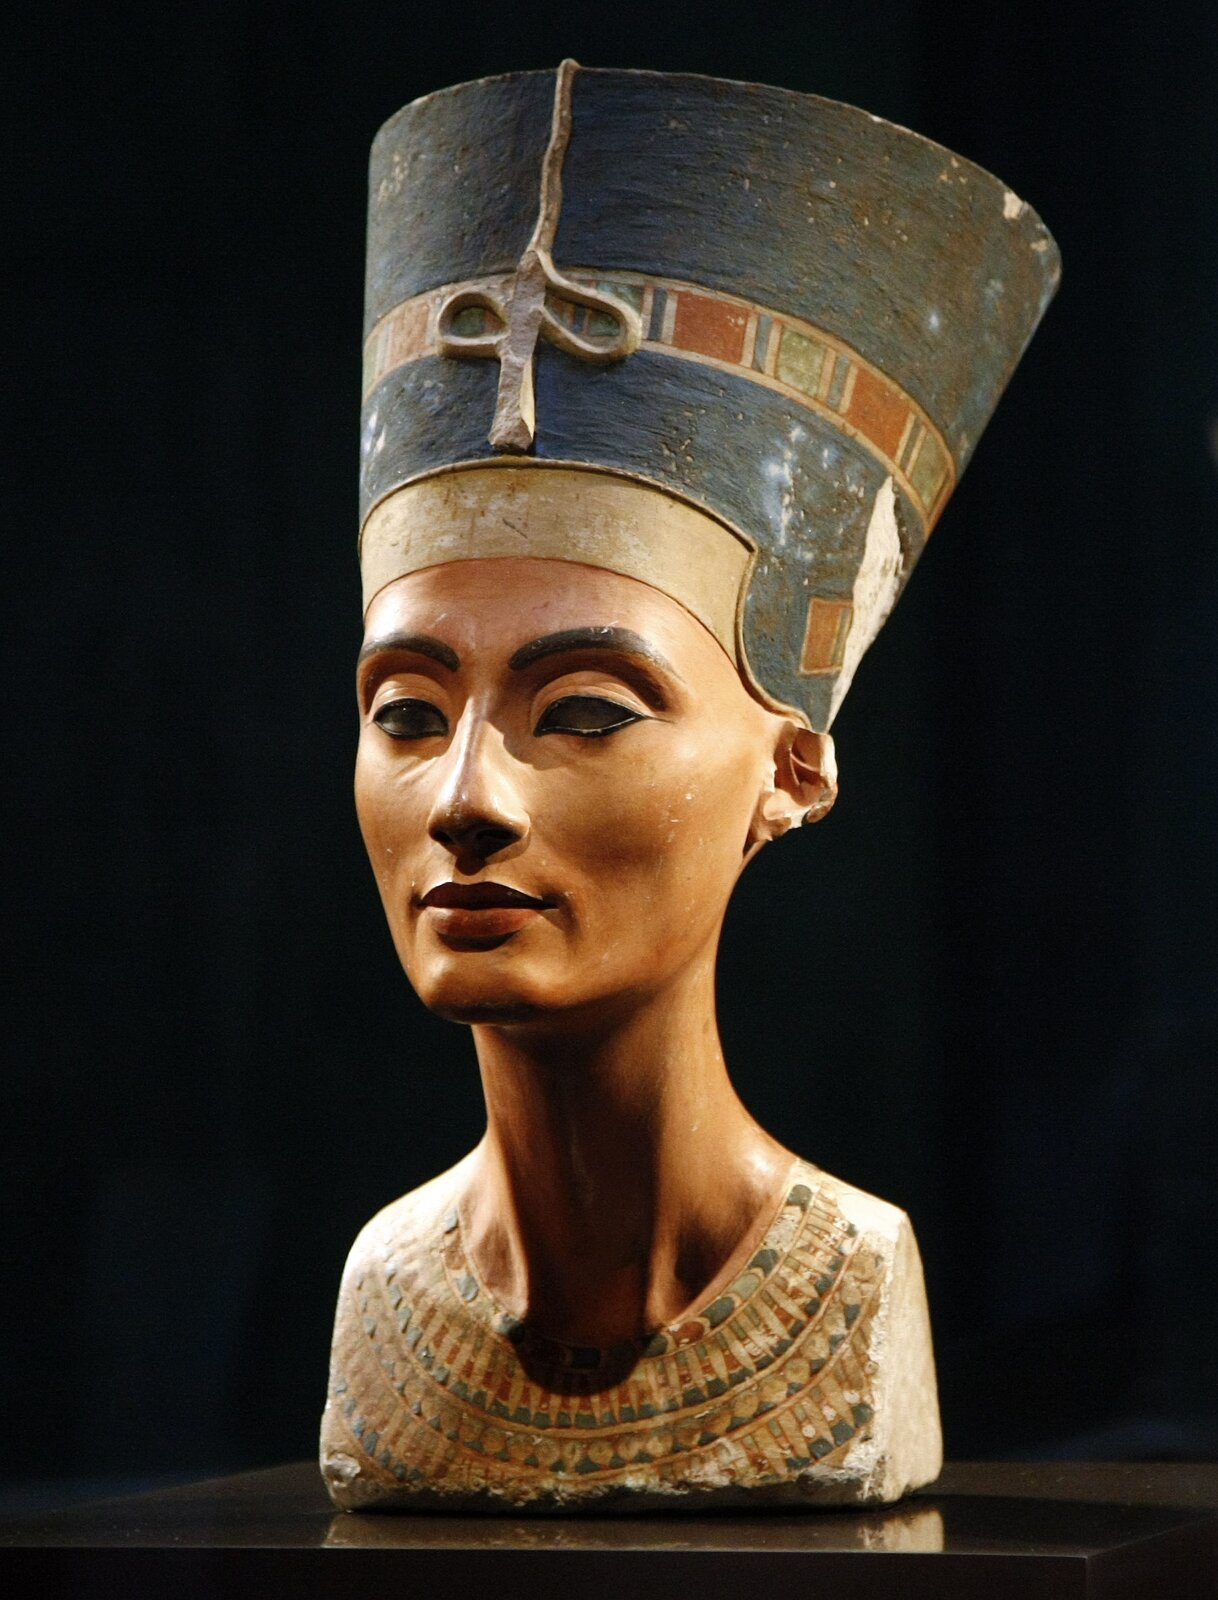 Ilustracja przedstawia pracę Totmesa pt. „Popiersie Nefertiti" (Nefretete). Obecnie znajduje się ono w Berlinie w Neues Museum-Muzeum Egipskie. Popiersie liczy 47 centymetrów i waży około 20 kilogramów. Zostało wyrzeźbione z wapienia i pokryte polichromowanym stiukiem. Jest to rzeźba pełnoplastyczna, zachowana w dobrym stanie mimo kilku ubytków (m.in. na wysokości ramion i górnej partii klatki piersiowej, na twarzy, uszach, a ponadto w tylnej partii nakrycia głowy). Głowa została nakryta wysmukłym czepcem oraz została osadzona na długiej szyi, na której widoczne są krtań i mięśnie. Nefertiti jest tu ukazana jako dorosła kobieta. Jej ciemno-niebieskie oczy są lekko przysłonięte powiekami, obwódki oczu są mocno podkreślone czarnym konturem. Lewe oko jest niepełne; brak tęczówki i źrenicy. Na jej ustach rysuje się lekki uśmiech. Ukazane zostały też w sposób subtelny policzki, zmarszczki i fałdy skórne (na powiekach, poniżej oczu oraz obok nosa). Na skroniach Nefertiti spoczywa wysoki ciemno-błękitny czepiec ozdobiony złotym diademem królewskim z charakterystycznymi prostokątnymi częściami w zielonkawych i rdzawych tonacjach. Z przodu diademu ureusz, w obecnym stanie silnie uszkodzony.